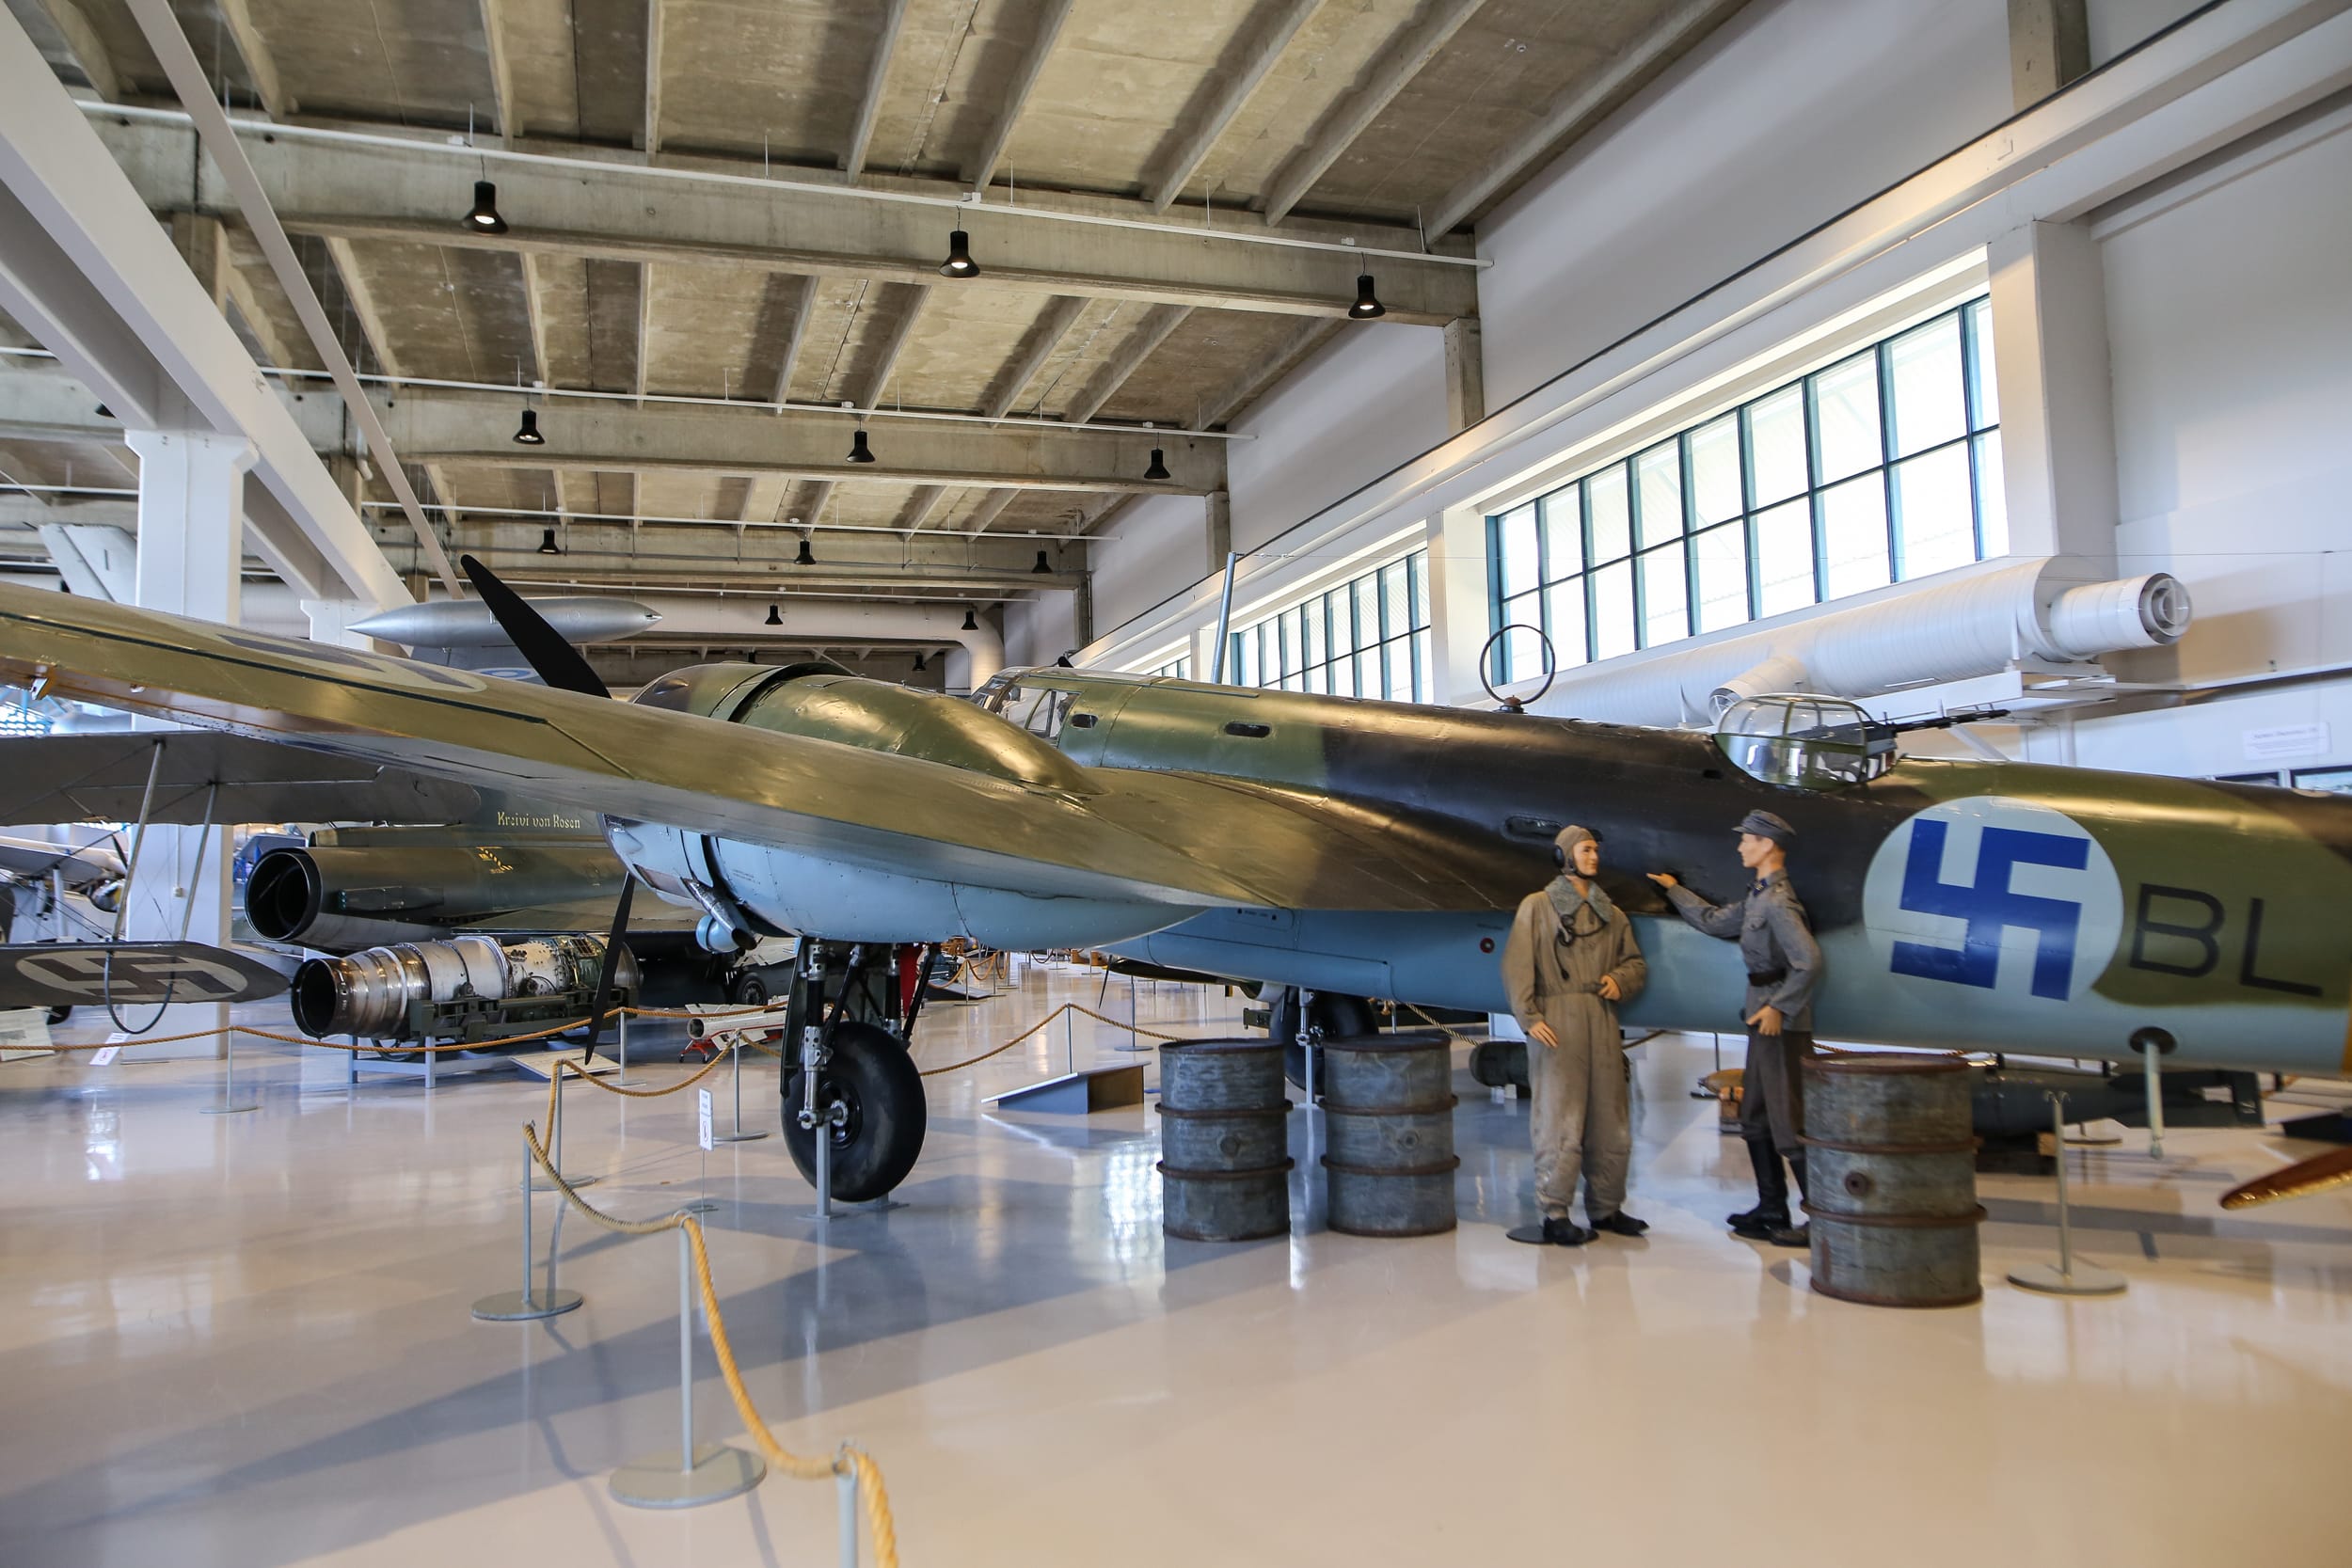 Bristol Blenheim -pommikone näyttelyssä. Koneen vierellä on kaksi mallinukkea, toinen on lentäjä ja toinen mekaanikko.